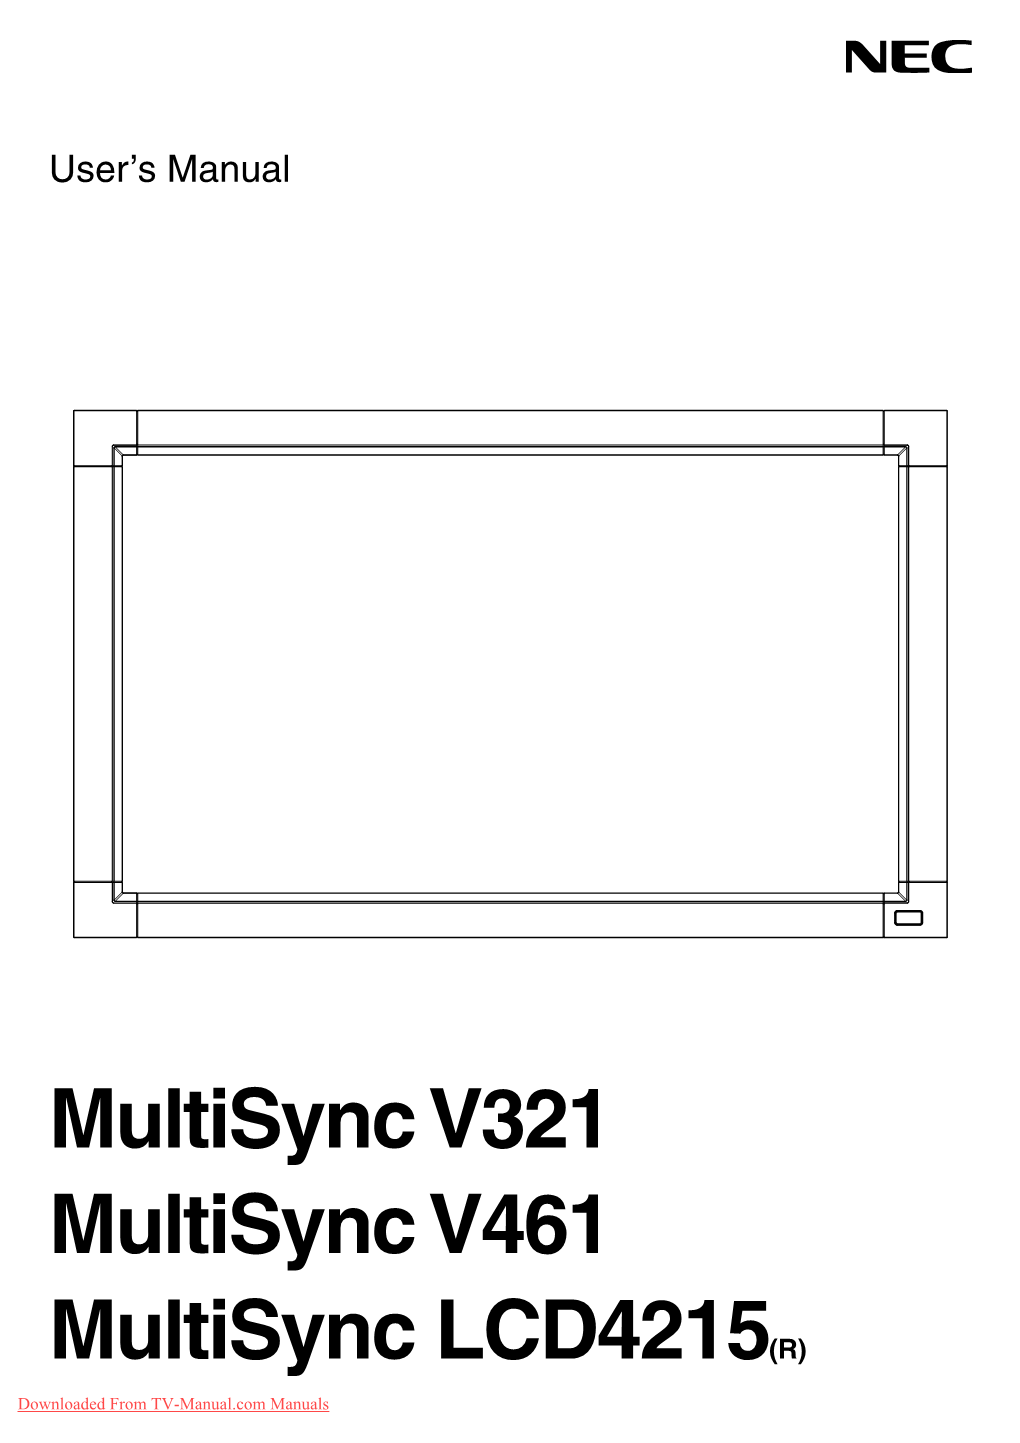 NEC Multisync V321 Tv User Guide Manual Operating Instructions